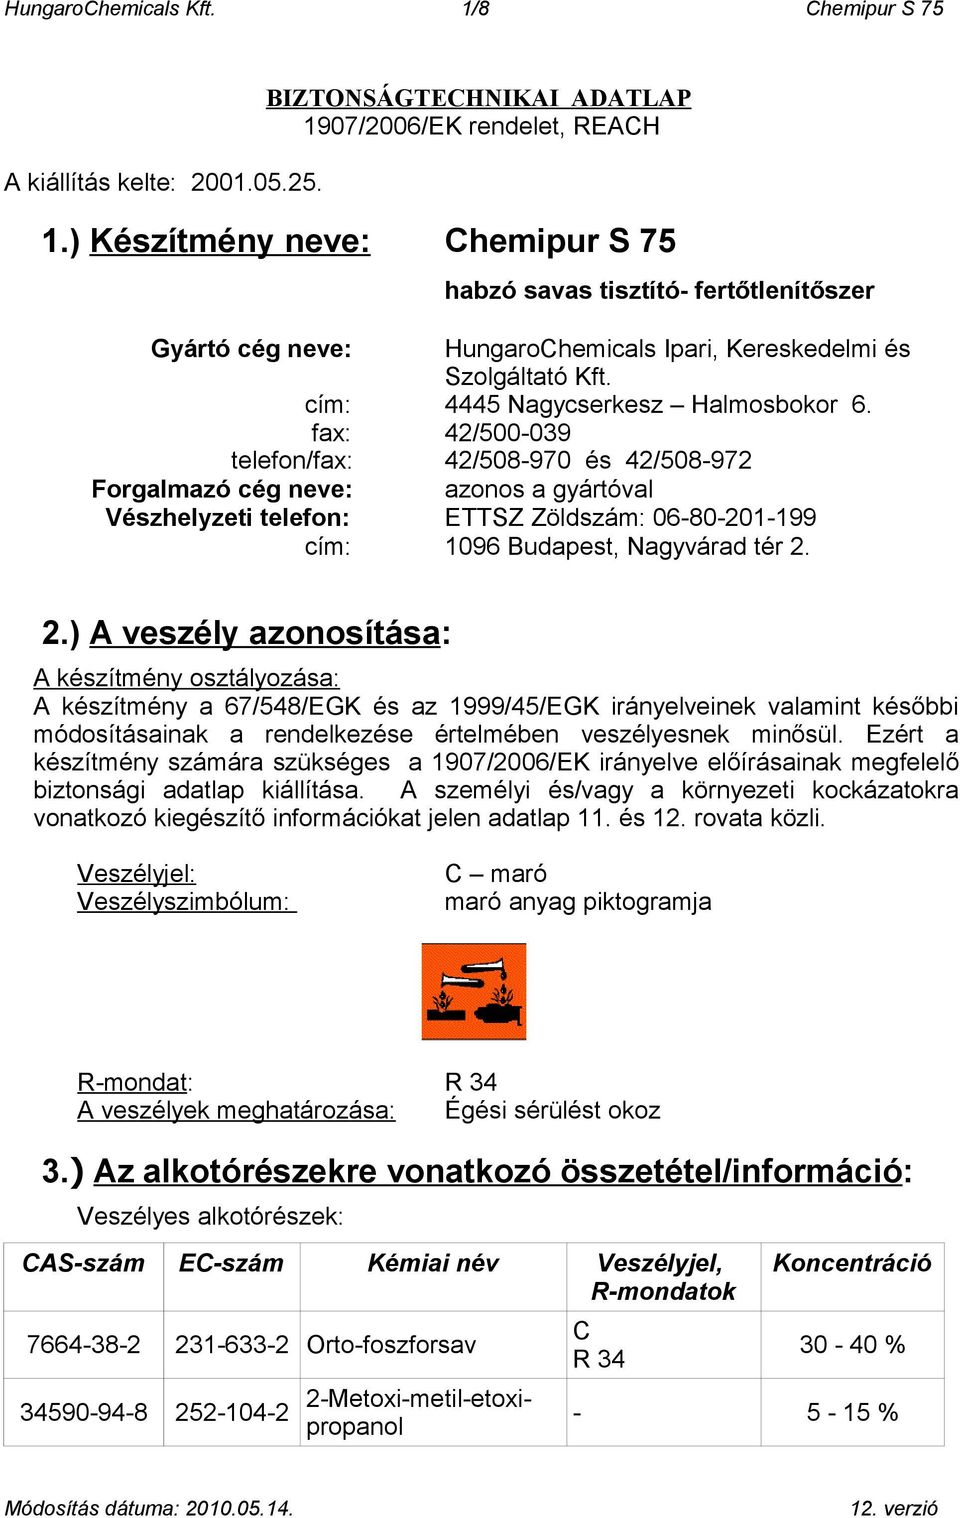 HungaroChemicals Kft. 1/8 Chemipur S 75. BIZTONSÁGTECHNIKAI ADATLAP  1907/2006/EK rendelet, REACH - PDF Ingyenes letöltés